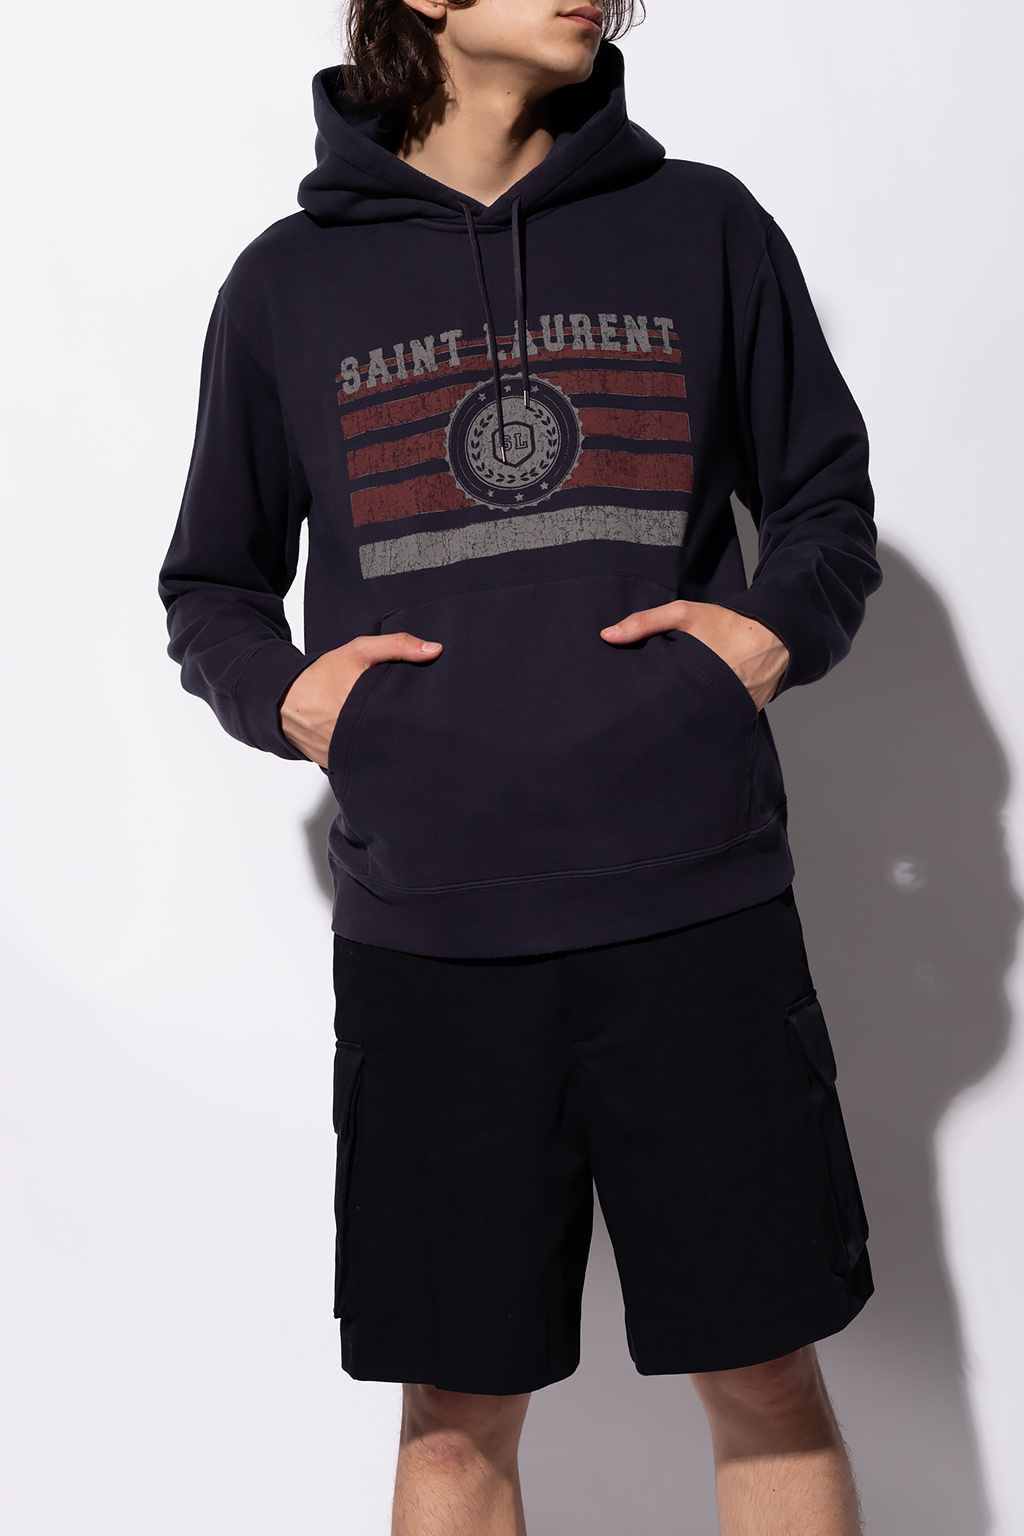 Saint Laurent Hoodie with logo | Men's Clothing | IetpShops